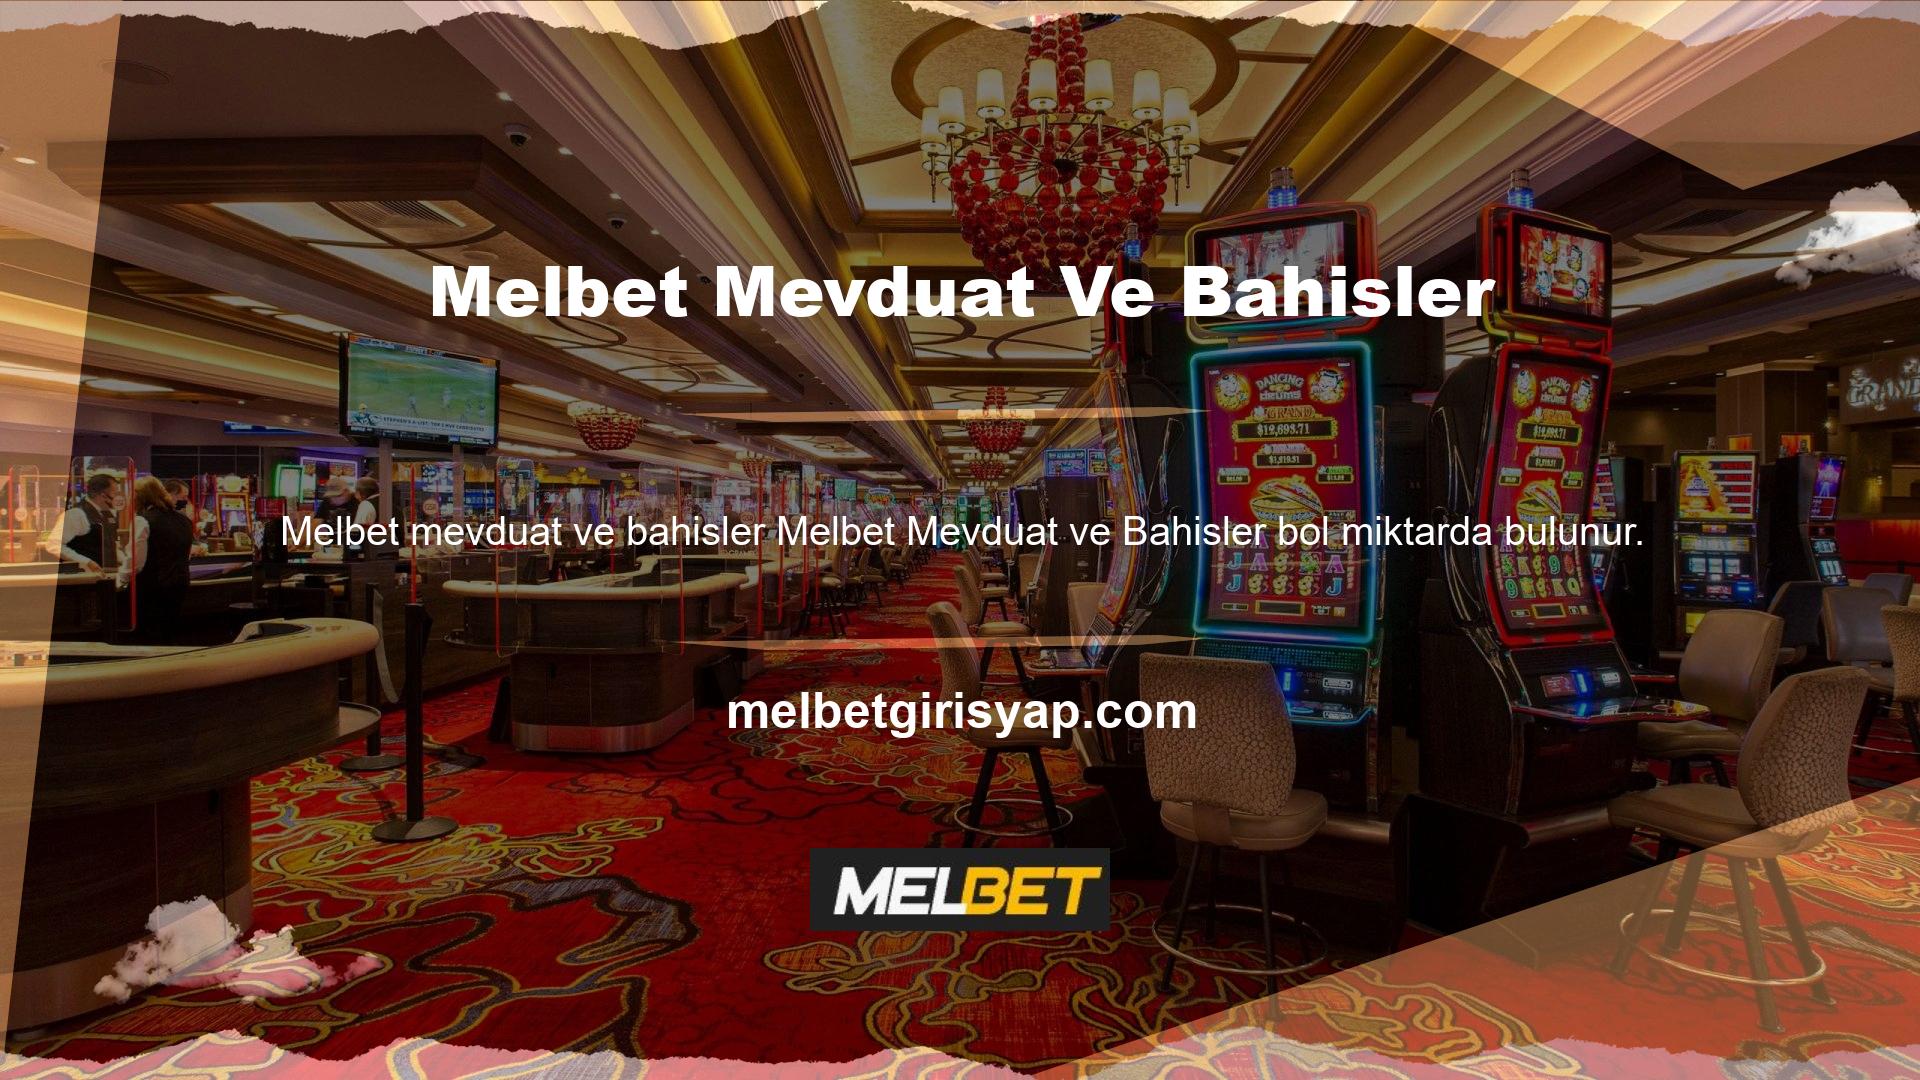 Melbet ülkedeki poker şirketlerinden biridir